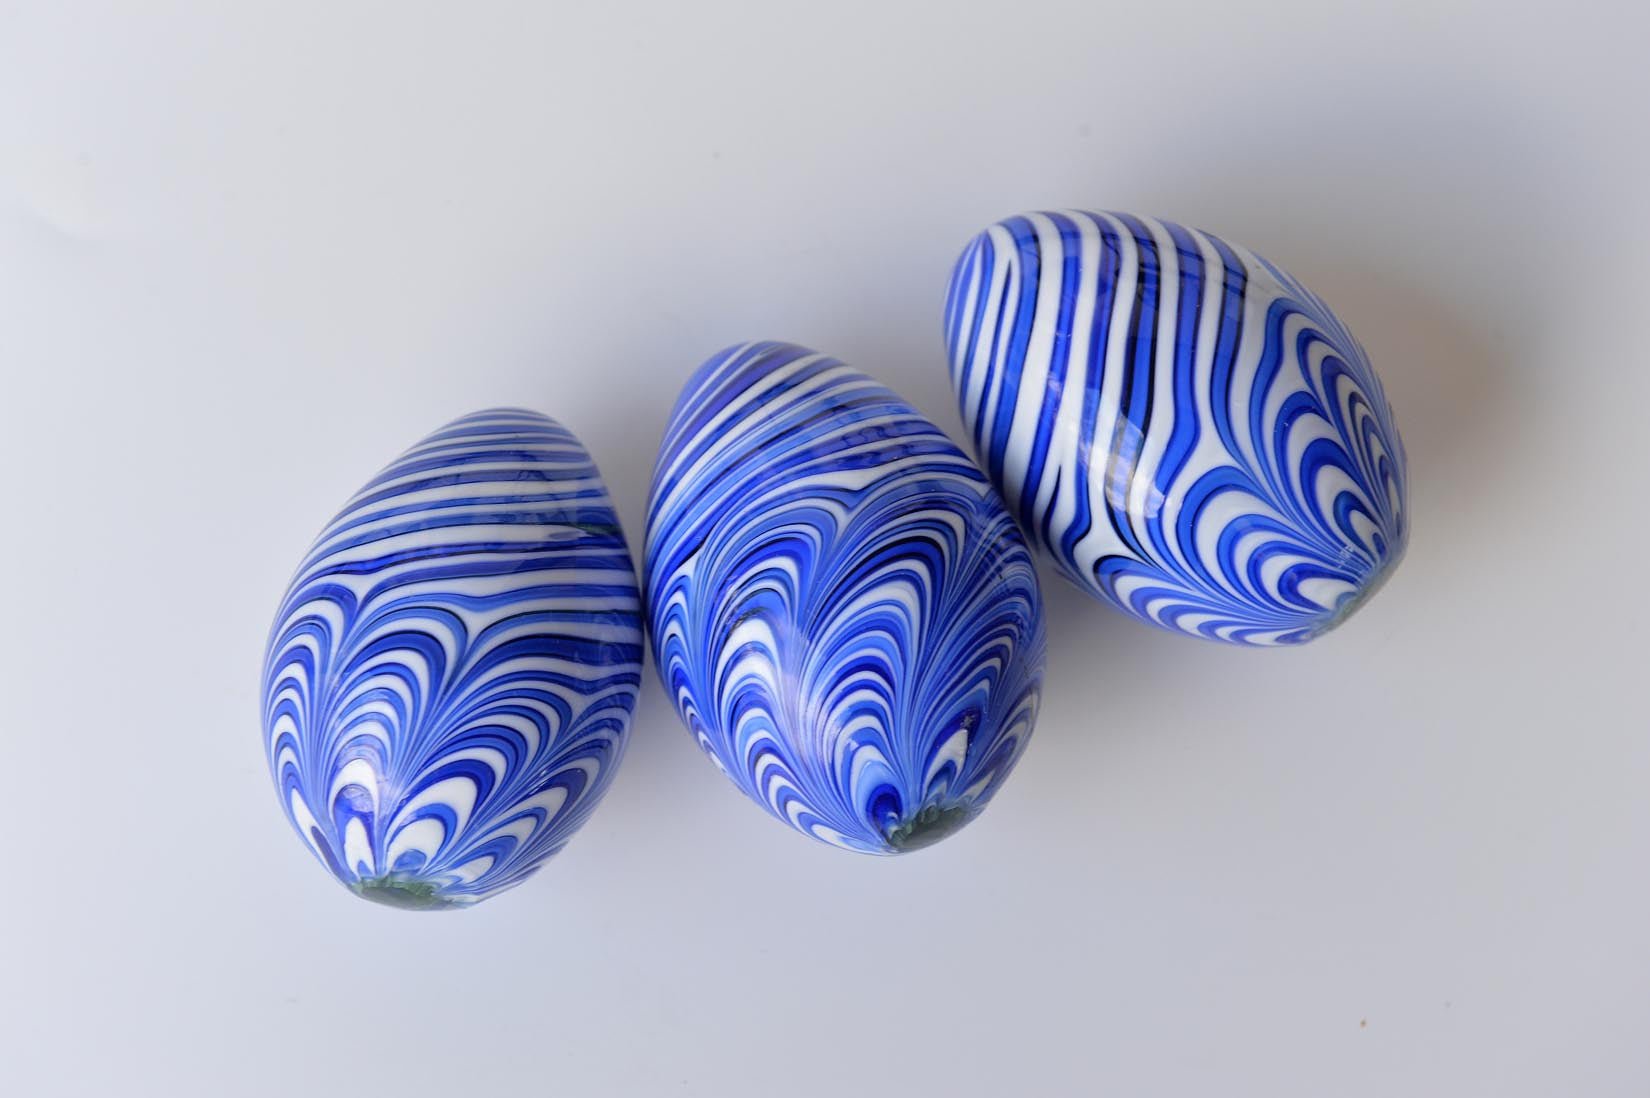 Blue and white glass eggs - Natalia Willmott